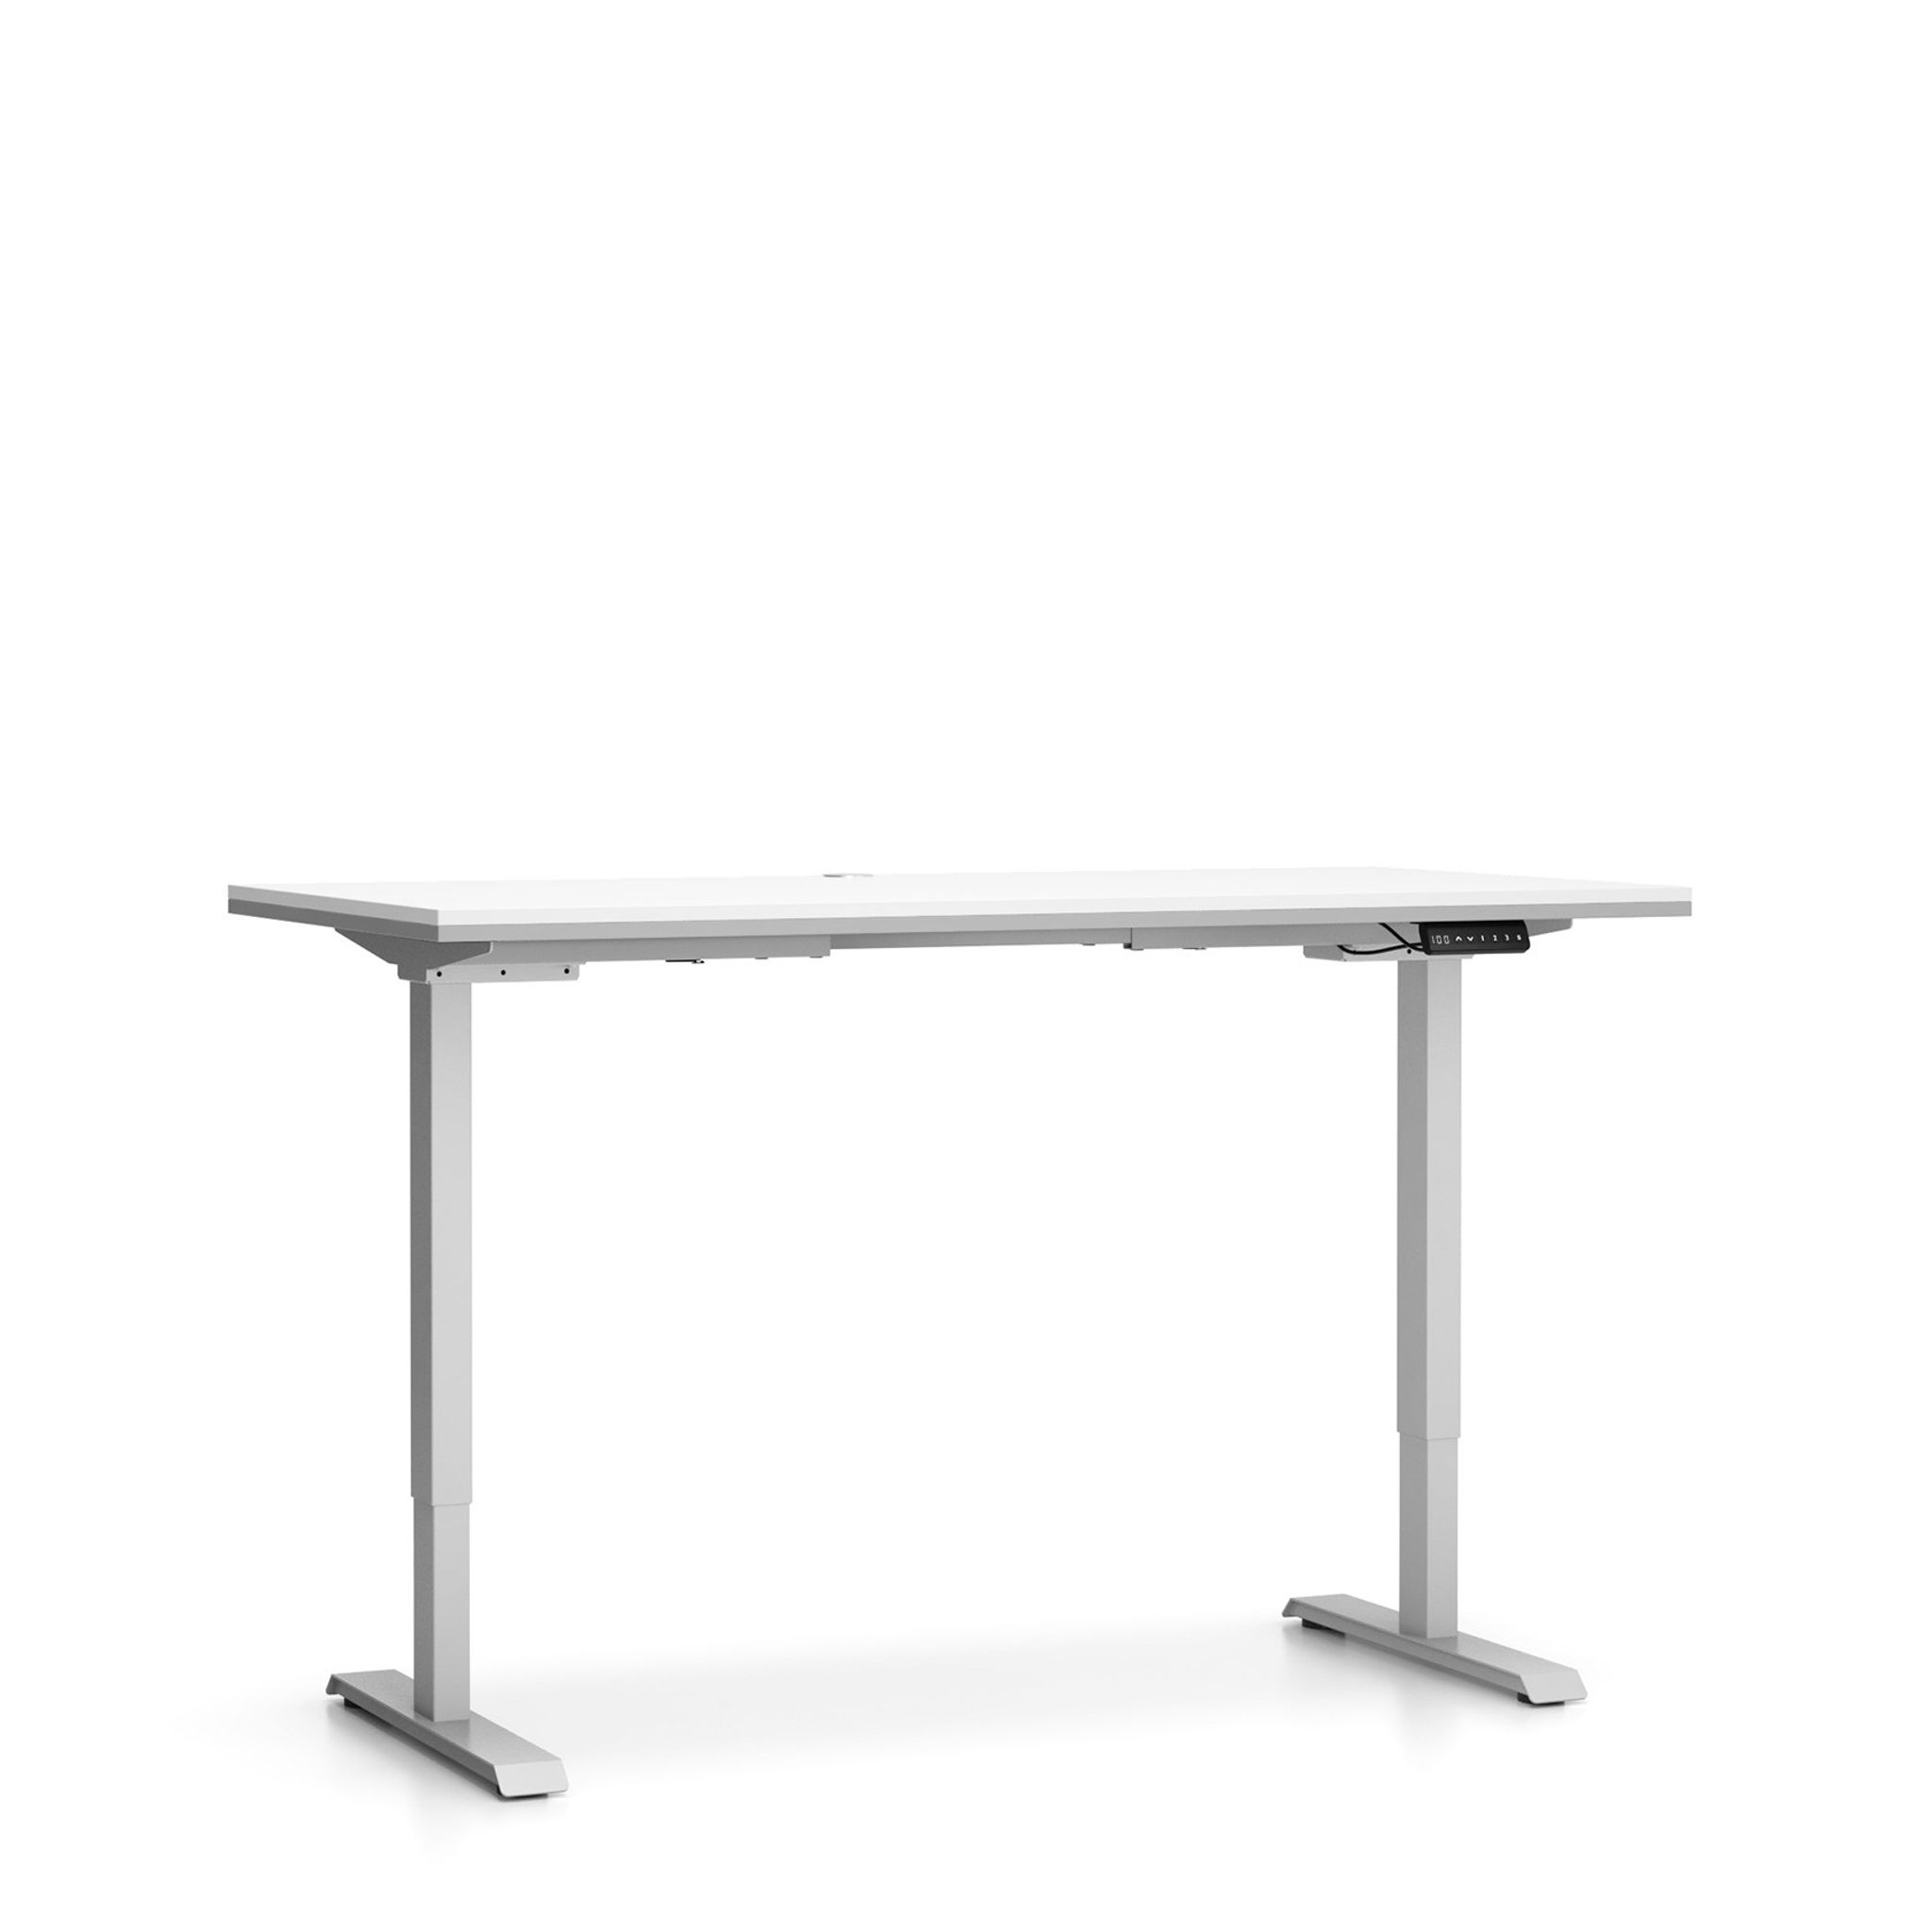 Kancelársky pracovný stôl SINGLE LAYERS bez prepážok, nastaviteľné nohy, biela / sivá